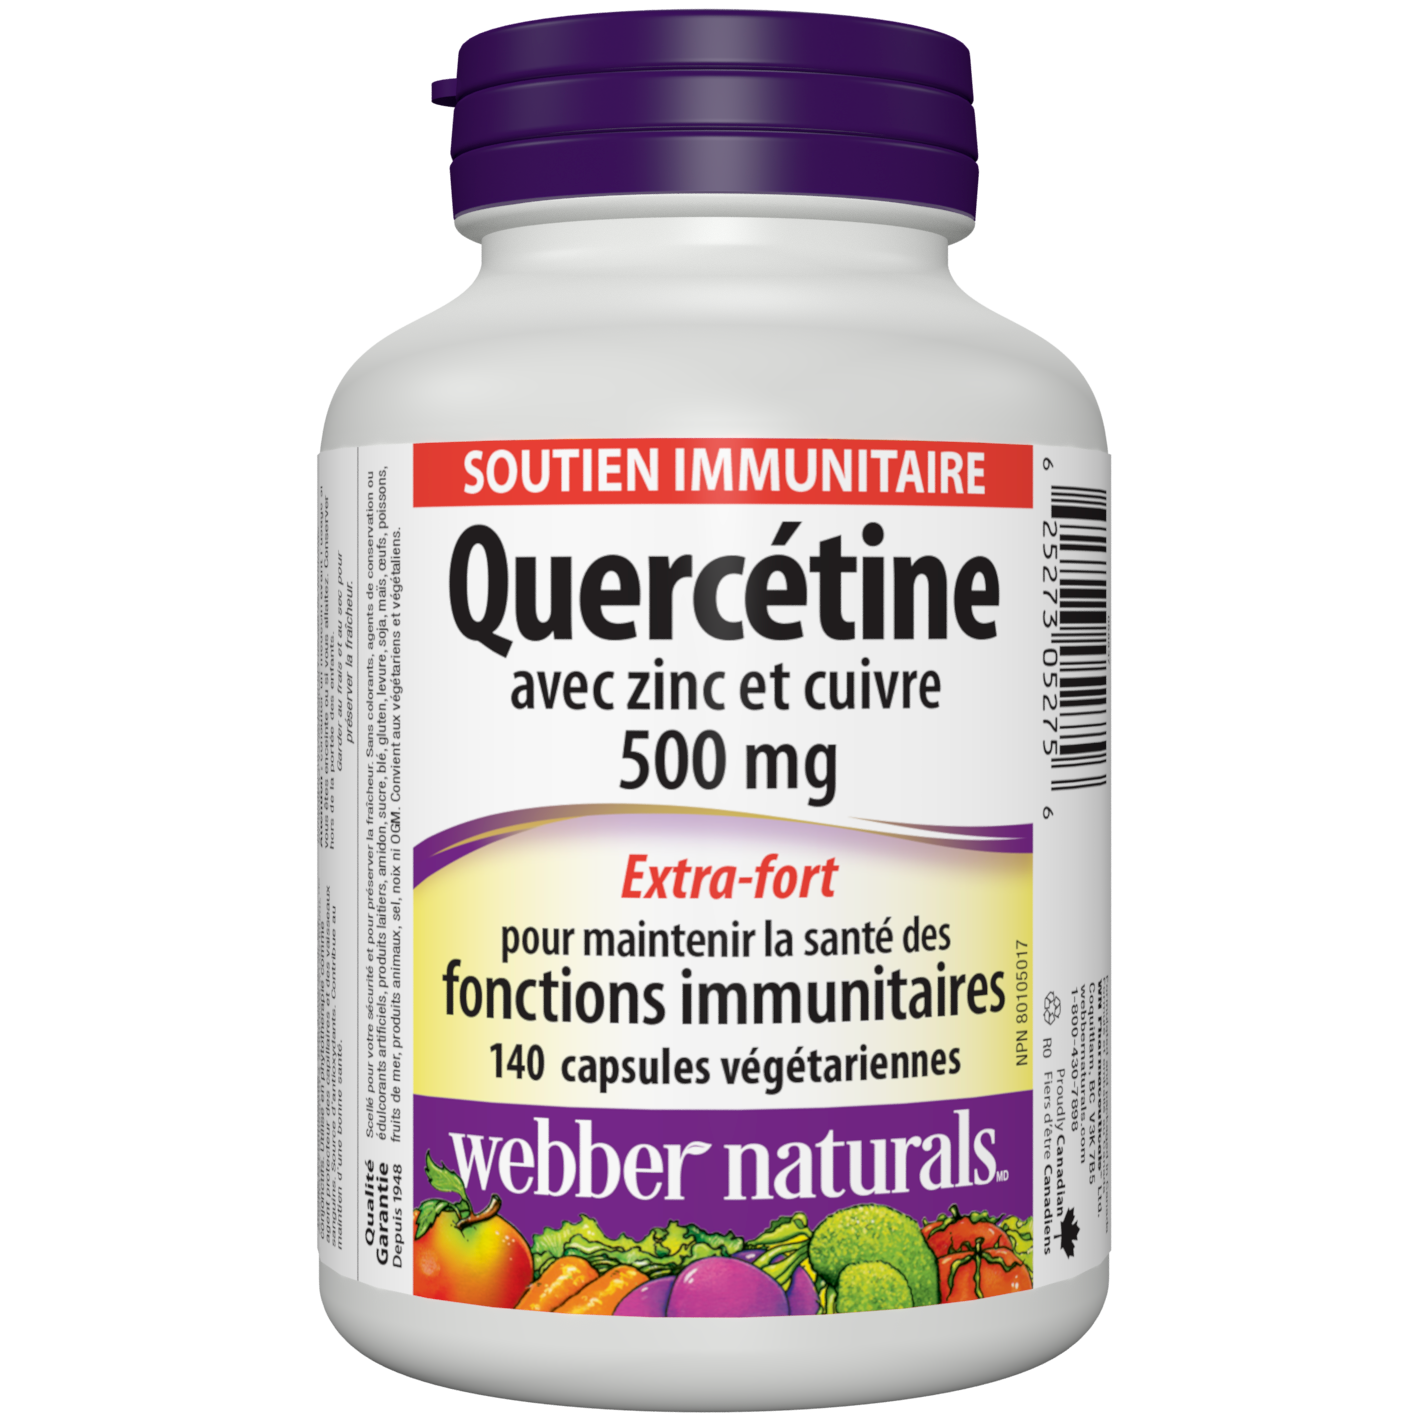 Quercétine avec zinc et cuivre 500 mg capsules végétariennes for Webber Naturals|v|hi-res|WN5275